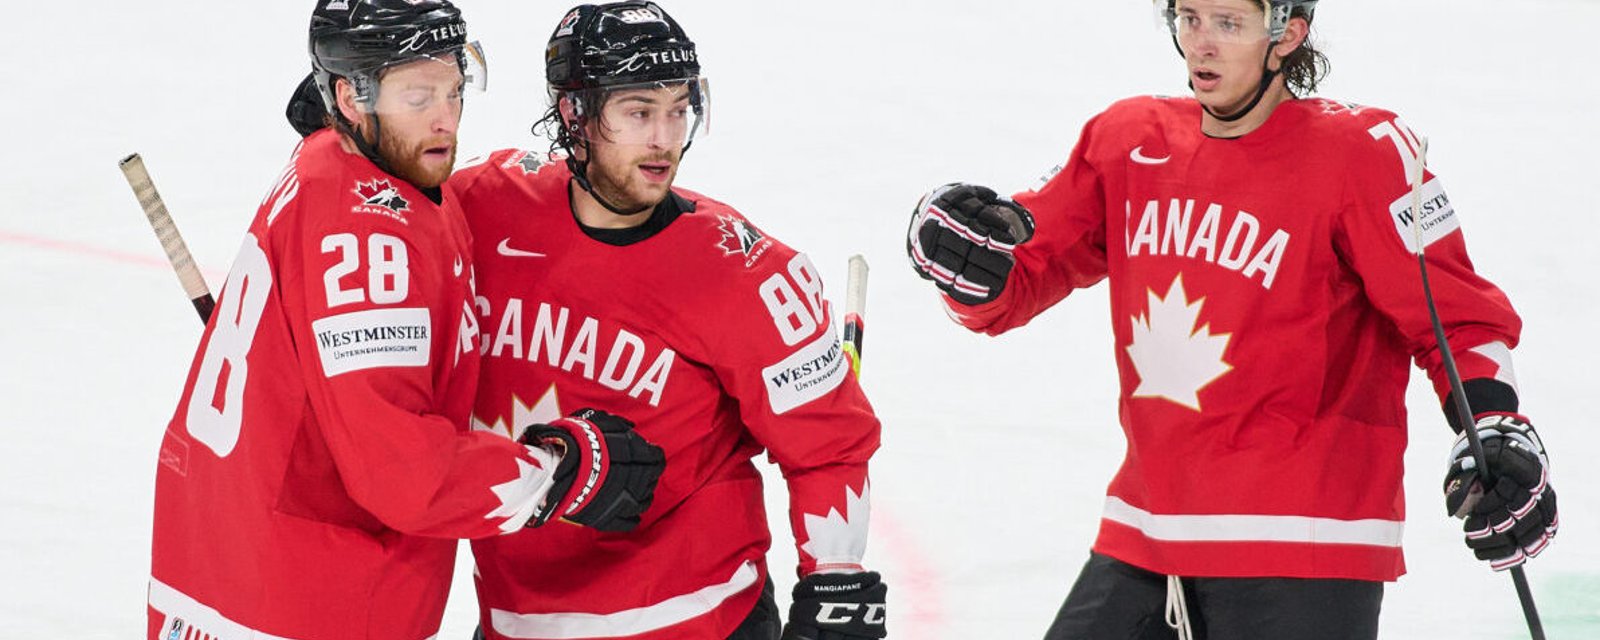 Team Canada jouera pour l'or !